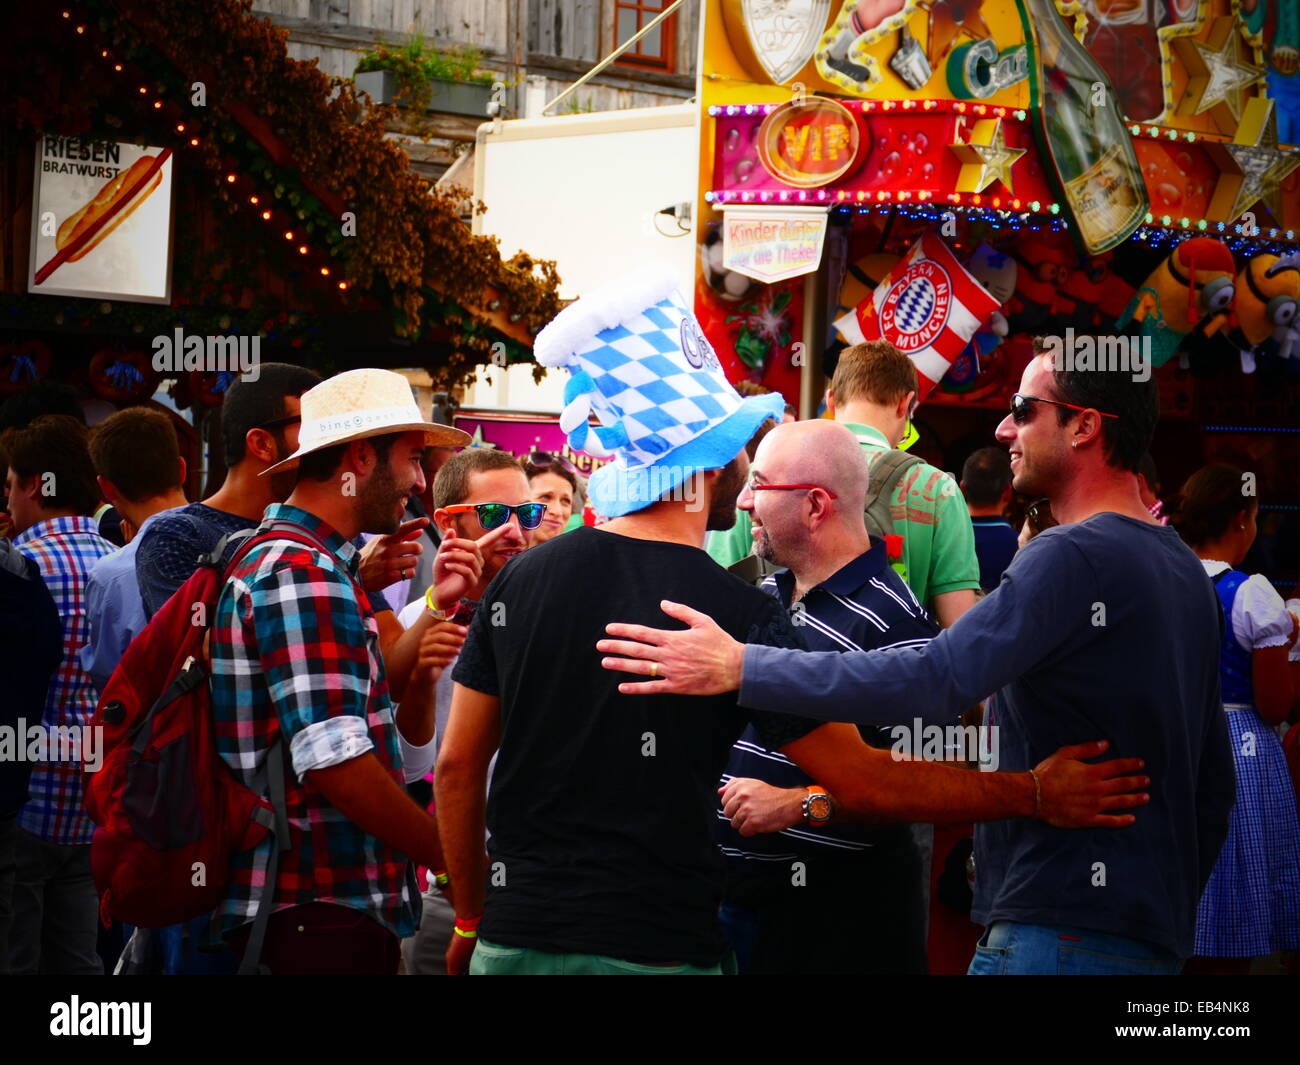 Germania Monaco di Baviera - Festa della birra Oktoberfest Oktoberfest Fiera 2014 Turisti con birra Hat felice di parlare Foto Stock